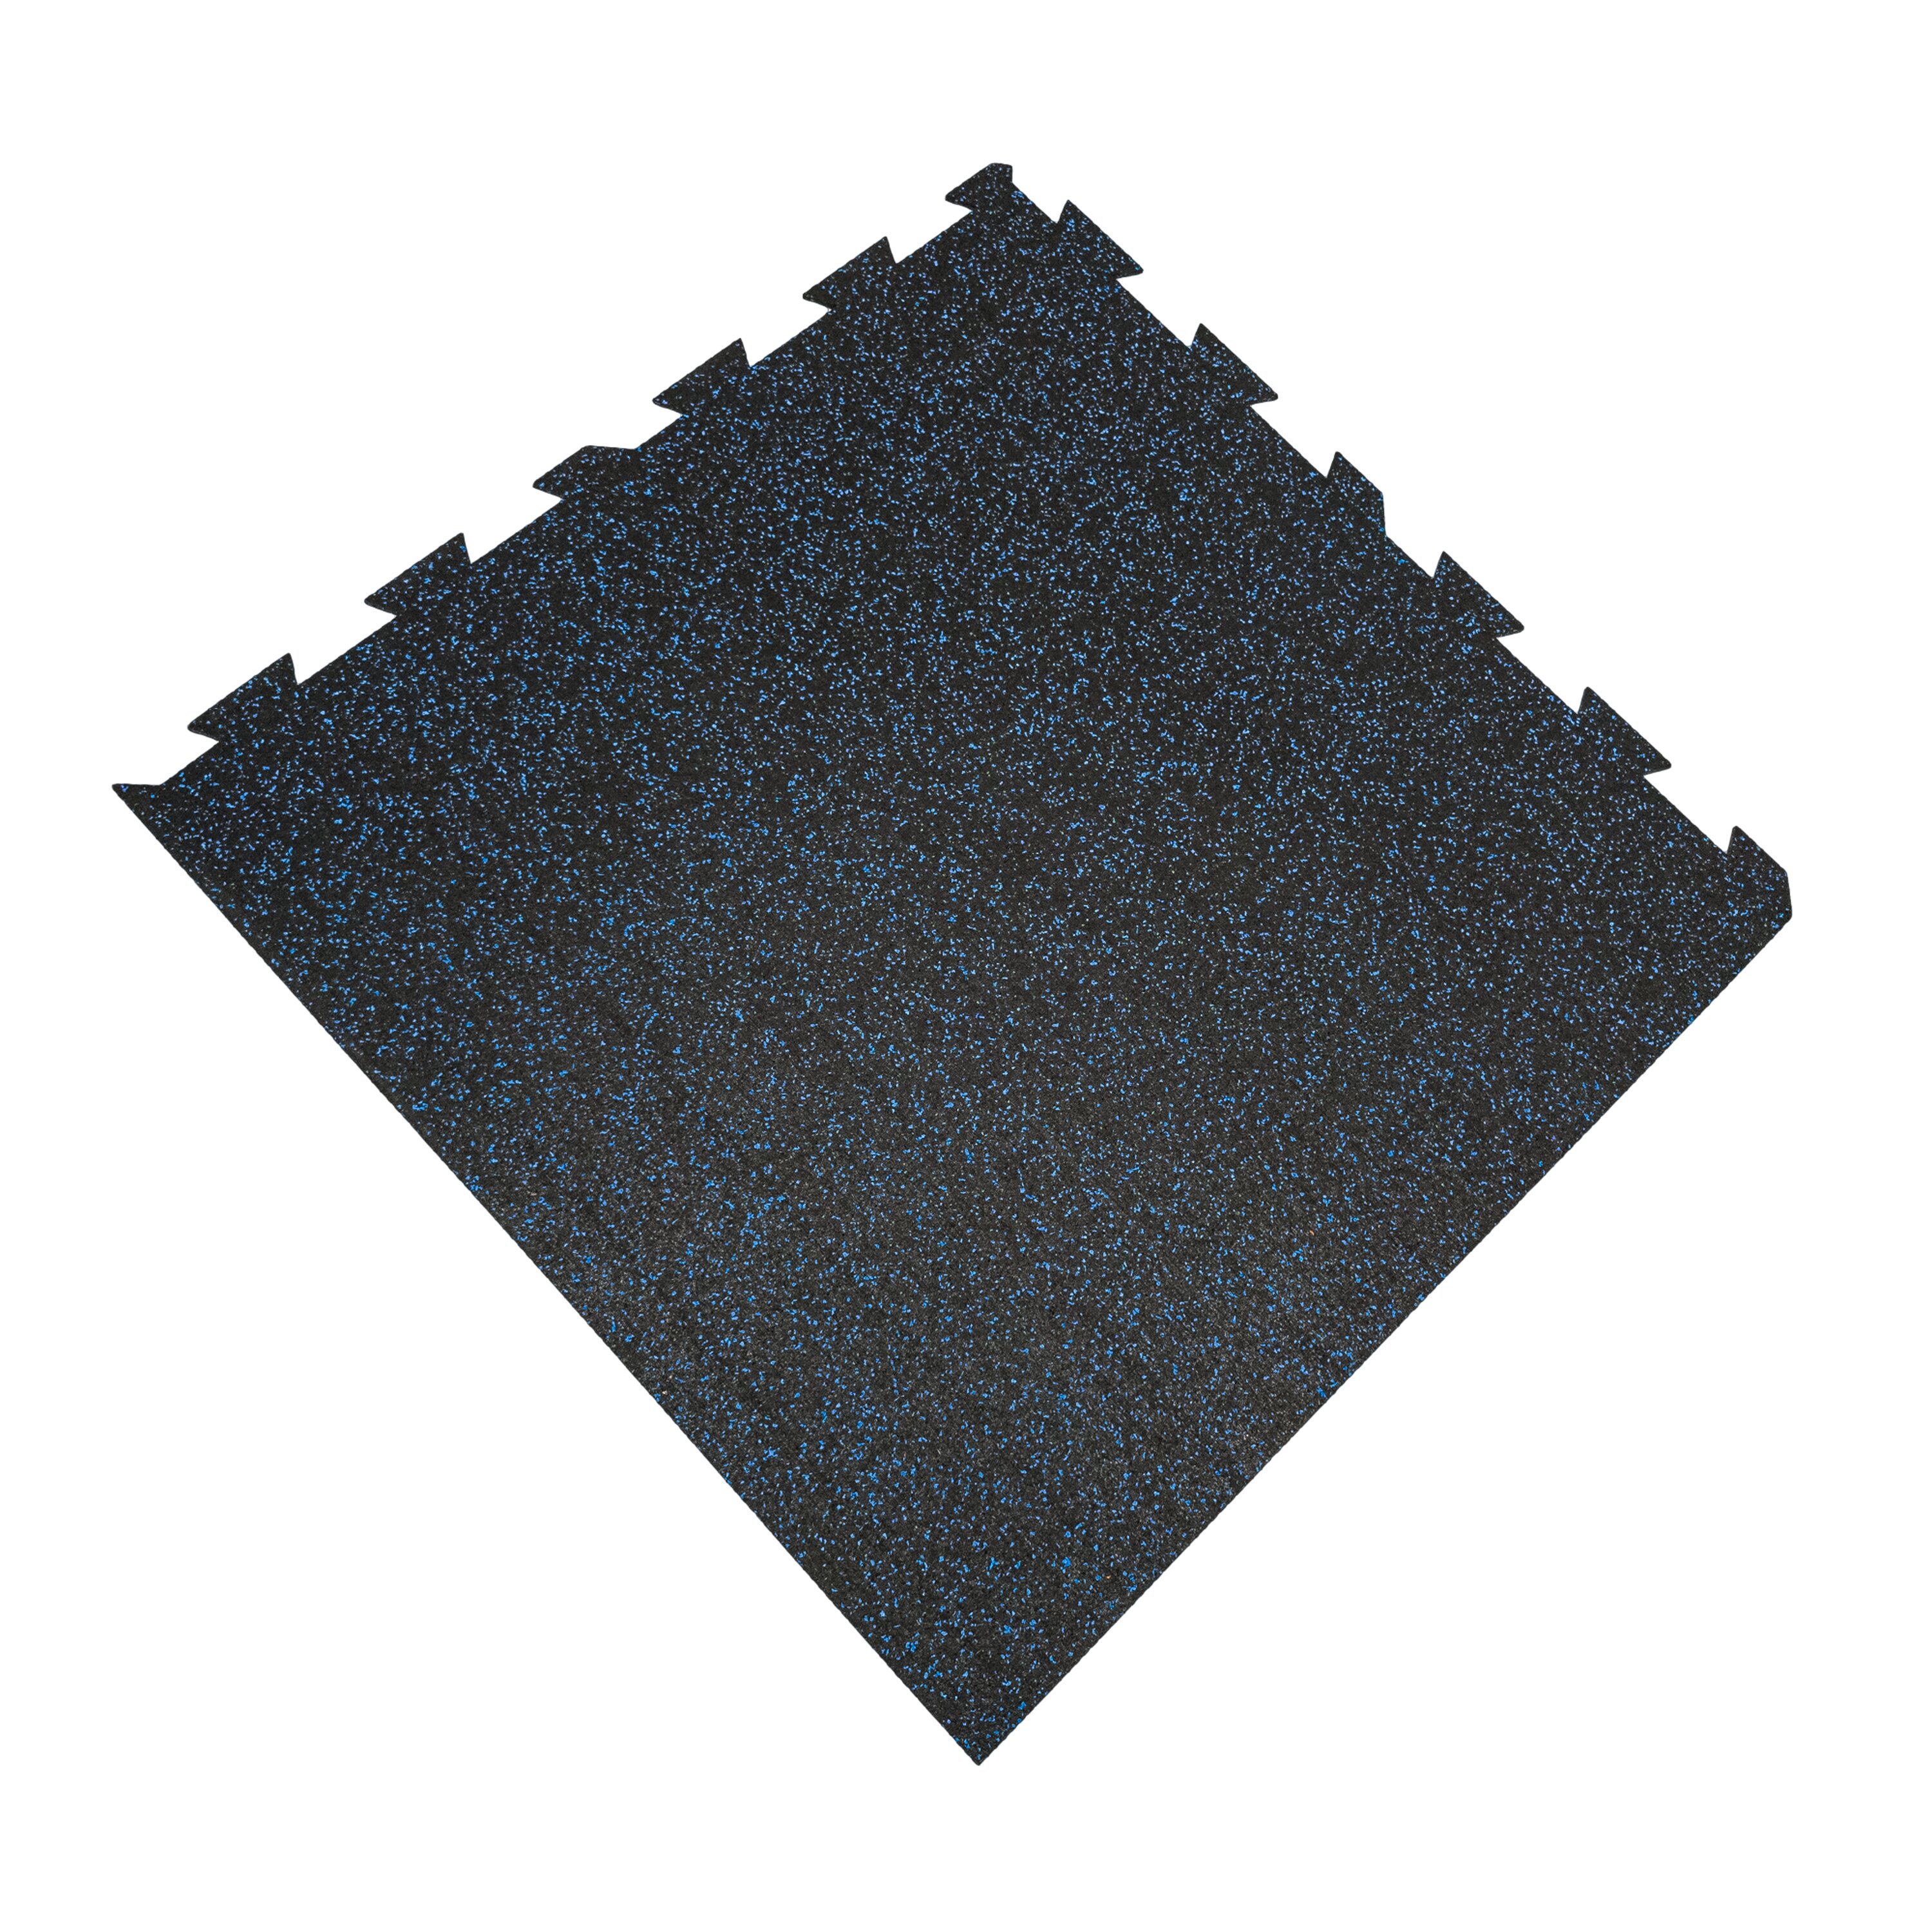 Černo-modrá podlahová guma FLOMA FitFlo SF1050 - délka 100 cm, šířka 100 cm, výška 1,6 cm